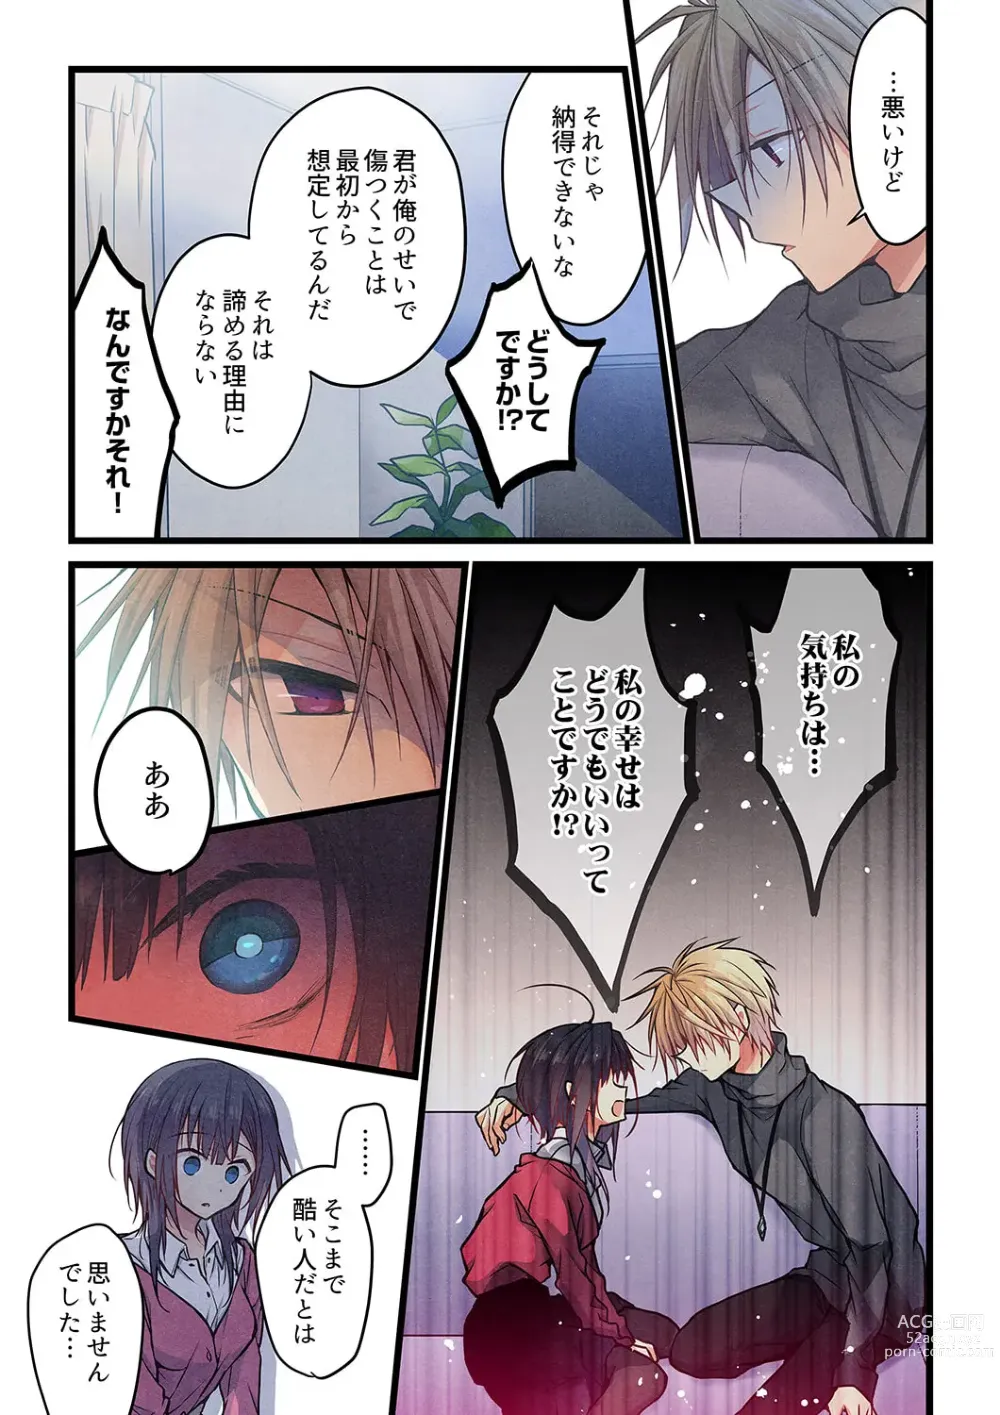 Page 23 of manga Kimi ga Sore o Ai to Yonde mo - Even if you call it love 35